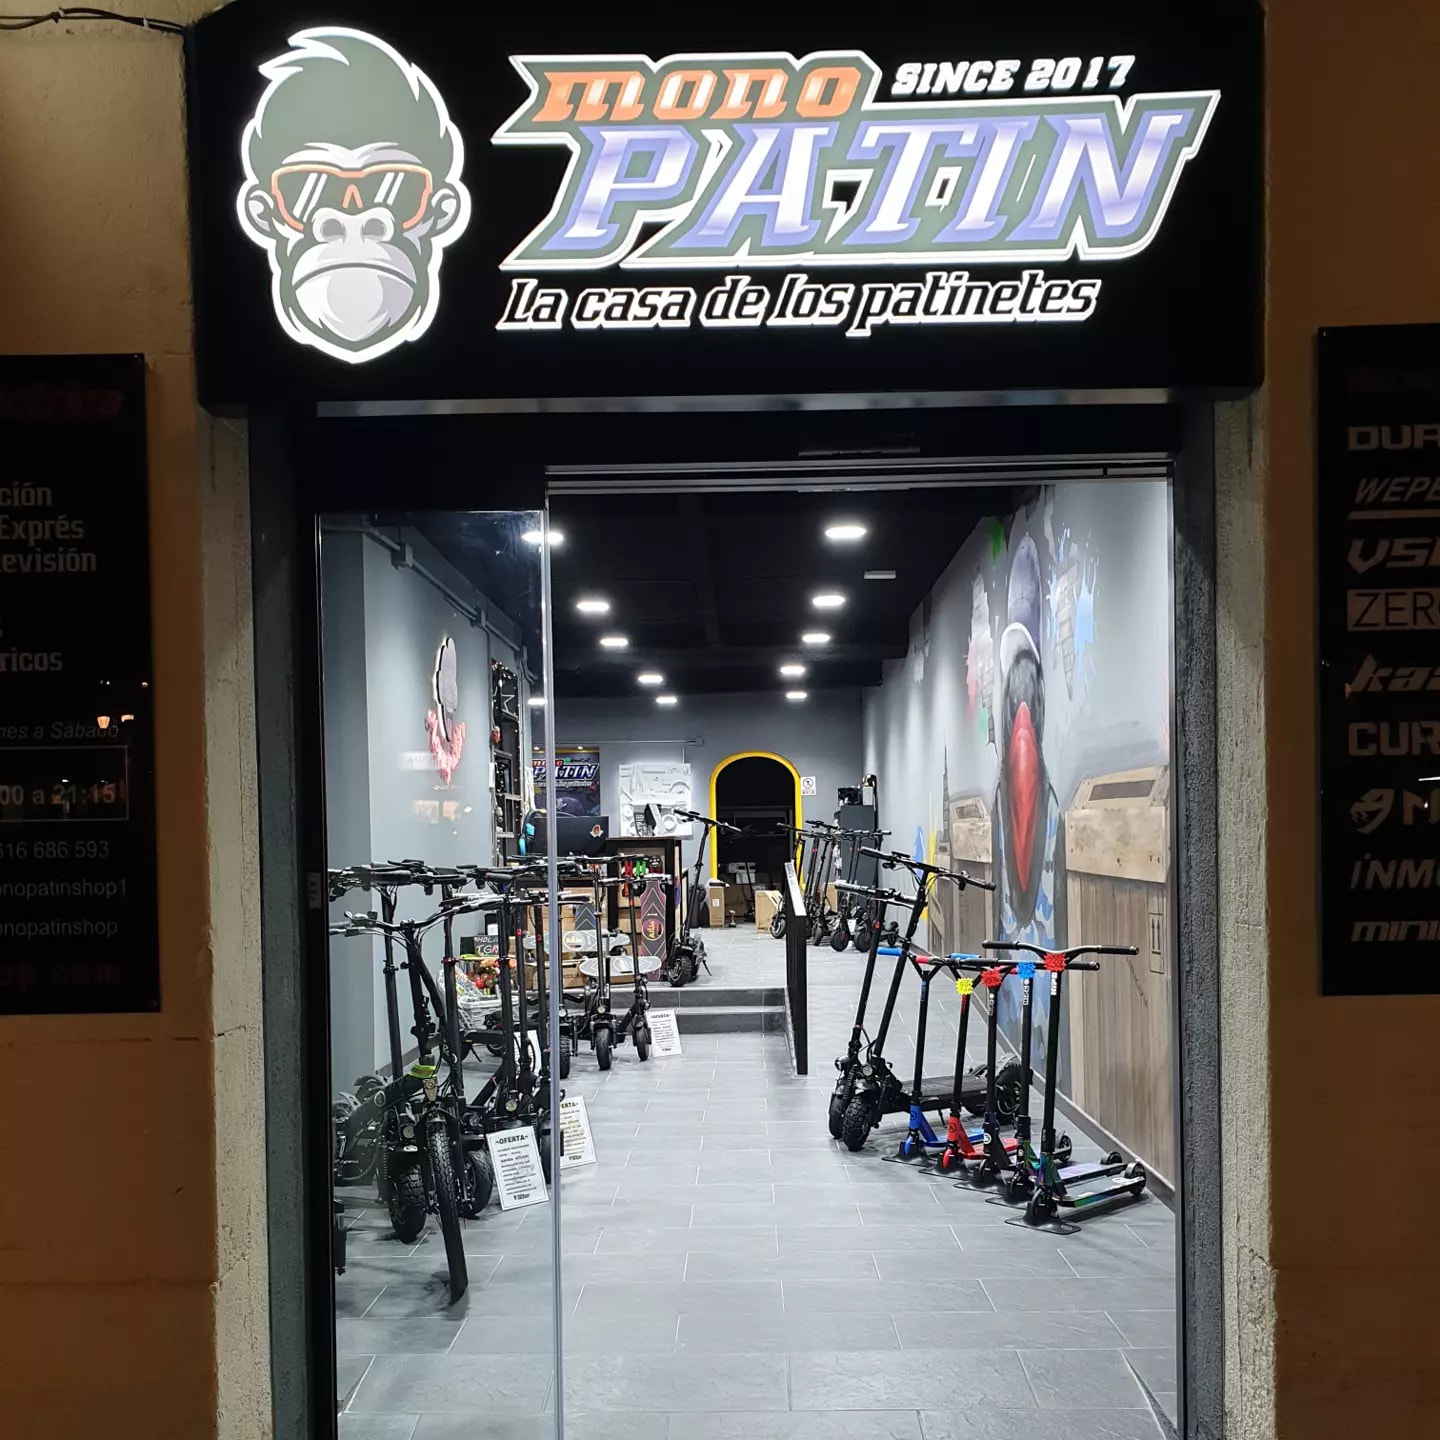 patinetes eléctricos en Tarragona interior tienda Monopatin